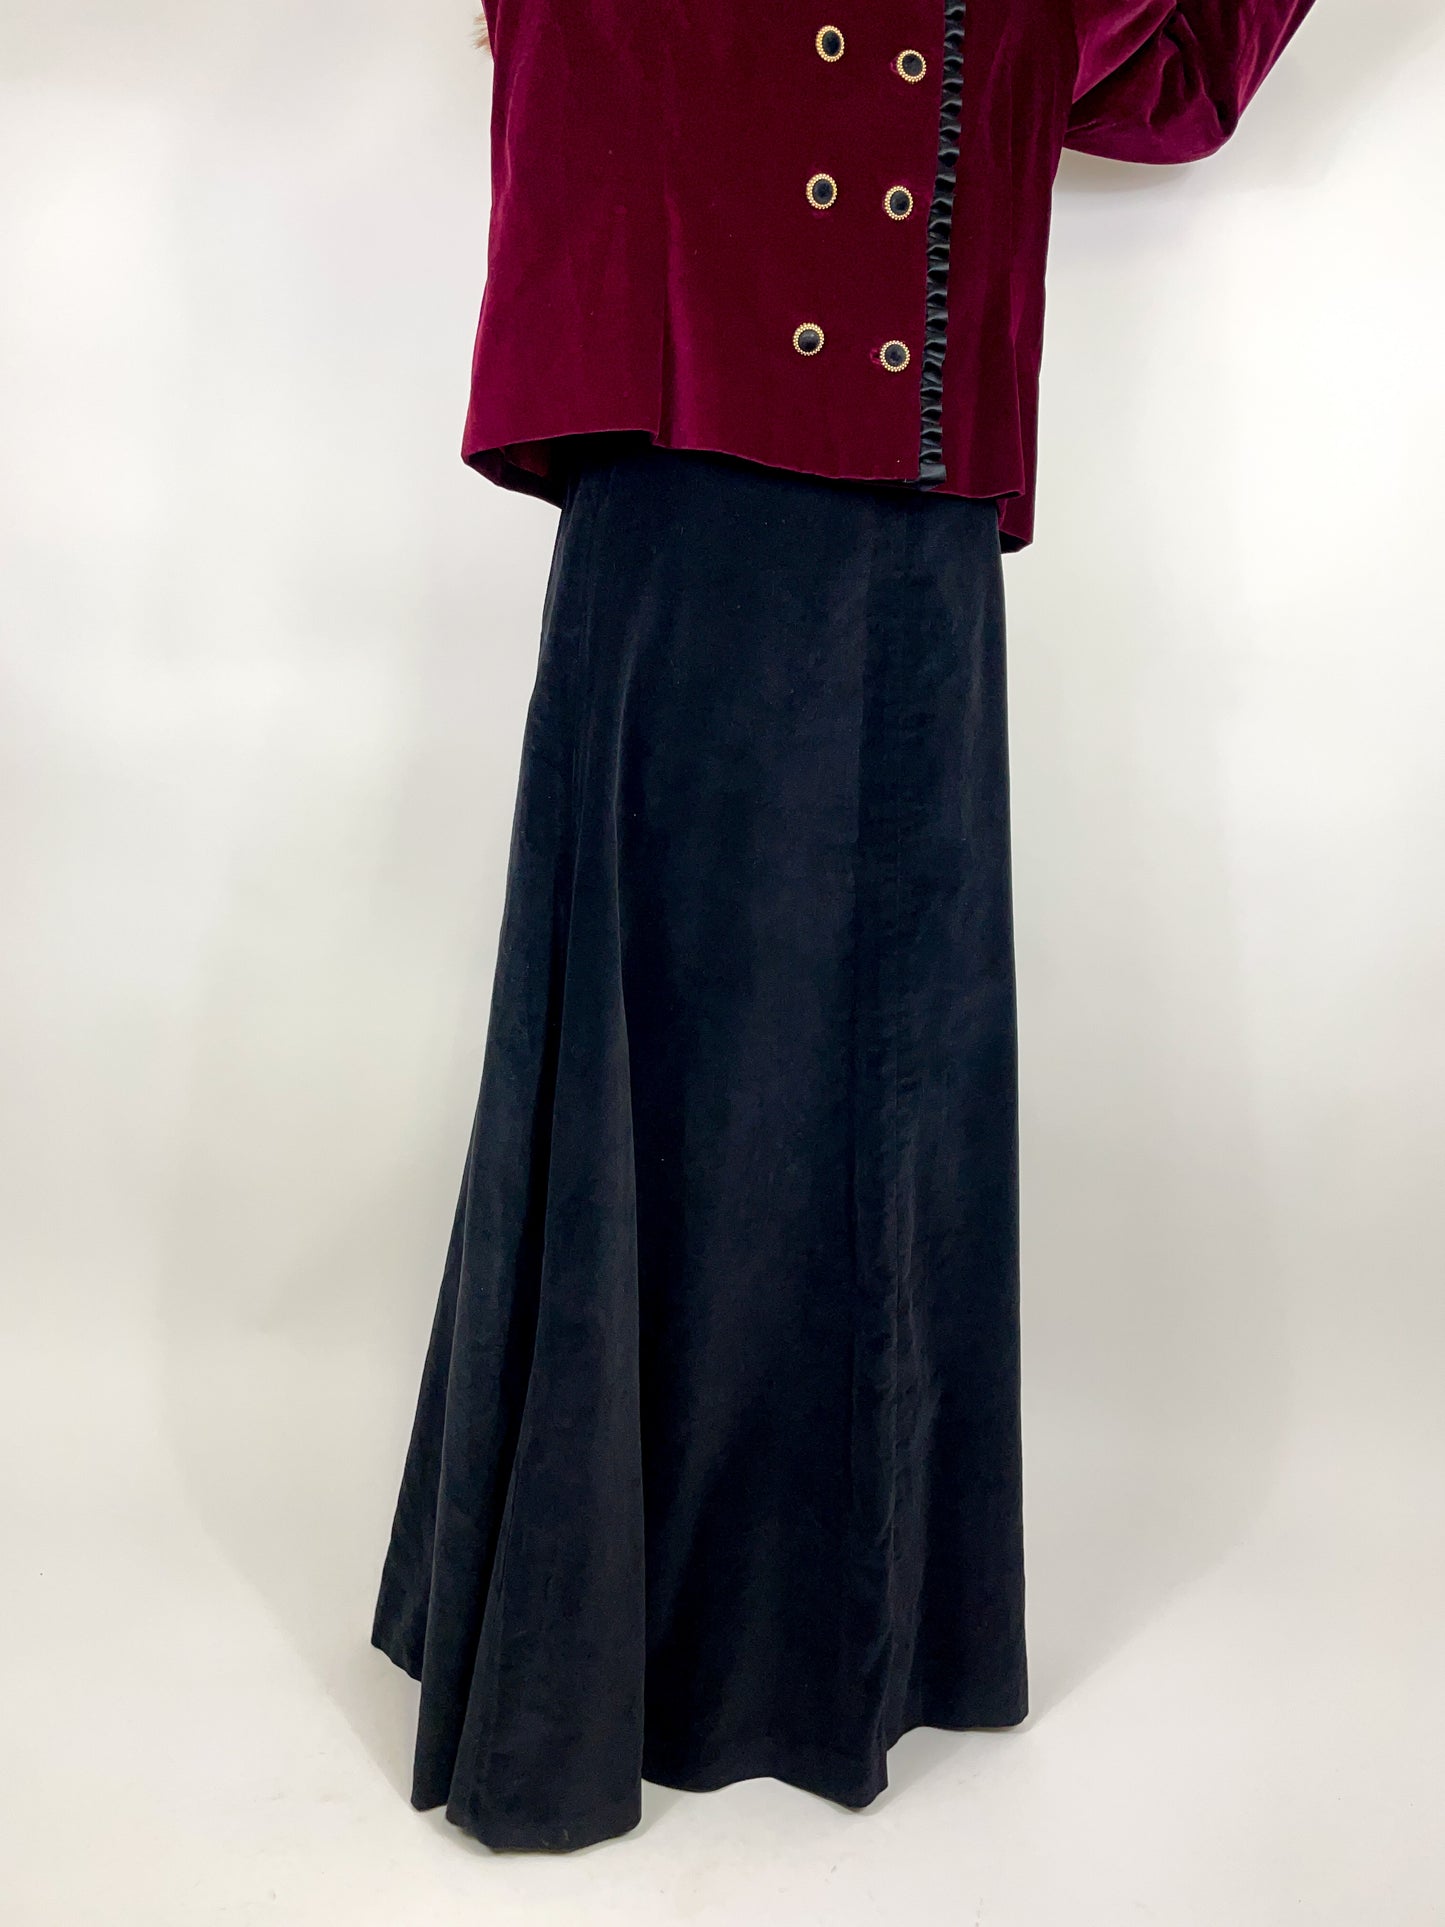 Smooth velvet long skirt